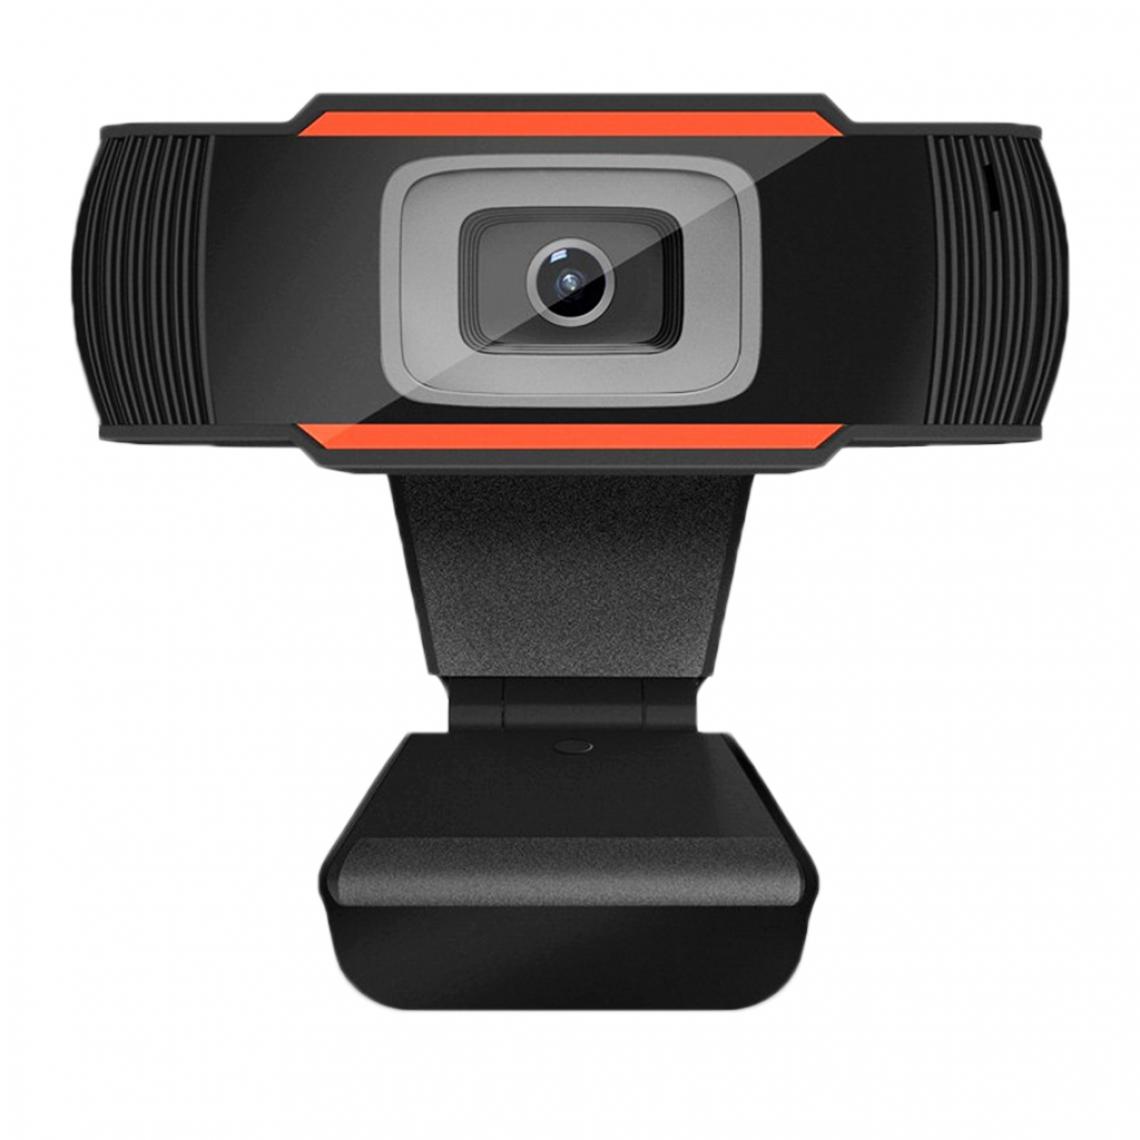 marque generique - Webcam de PC Full HD 1080P USB Webcam pour Youtube, Skype, Appels Vidéo XBOX One - Webcam